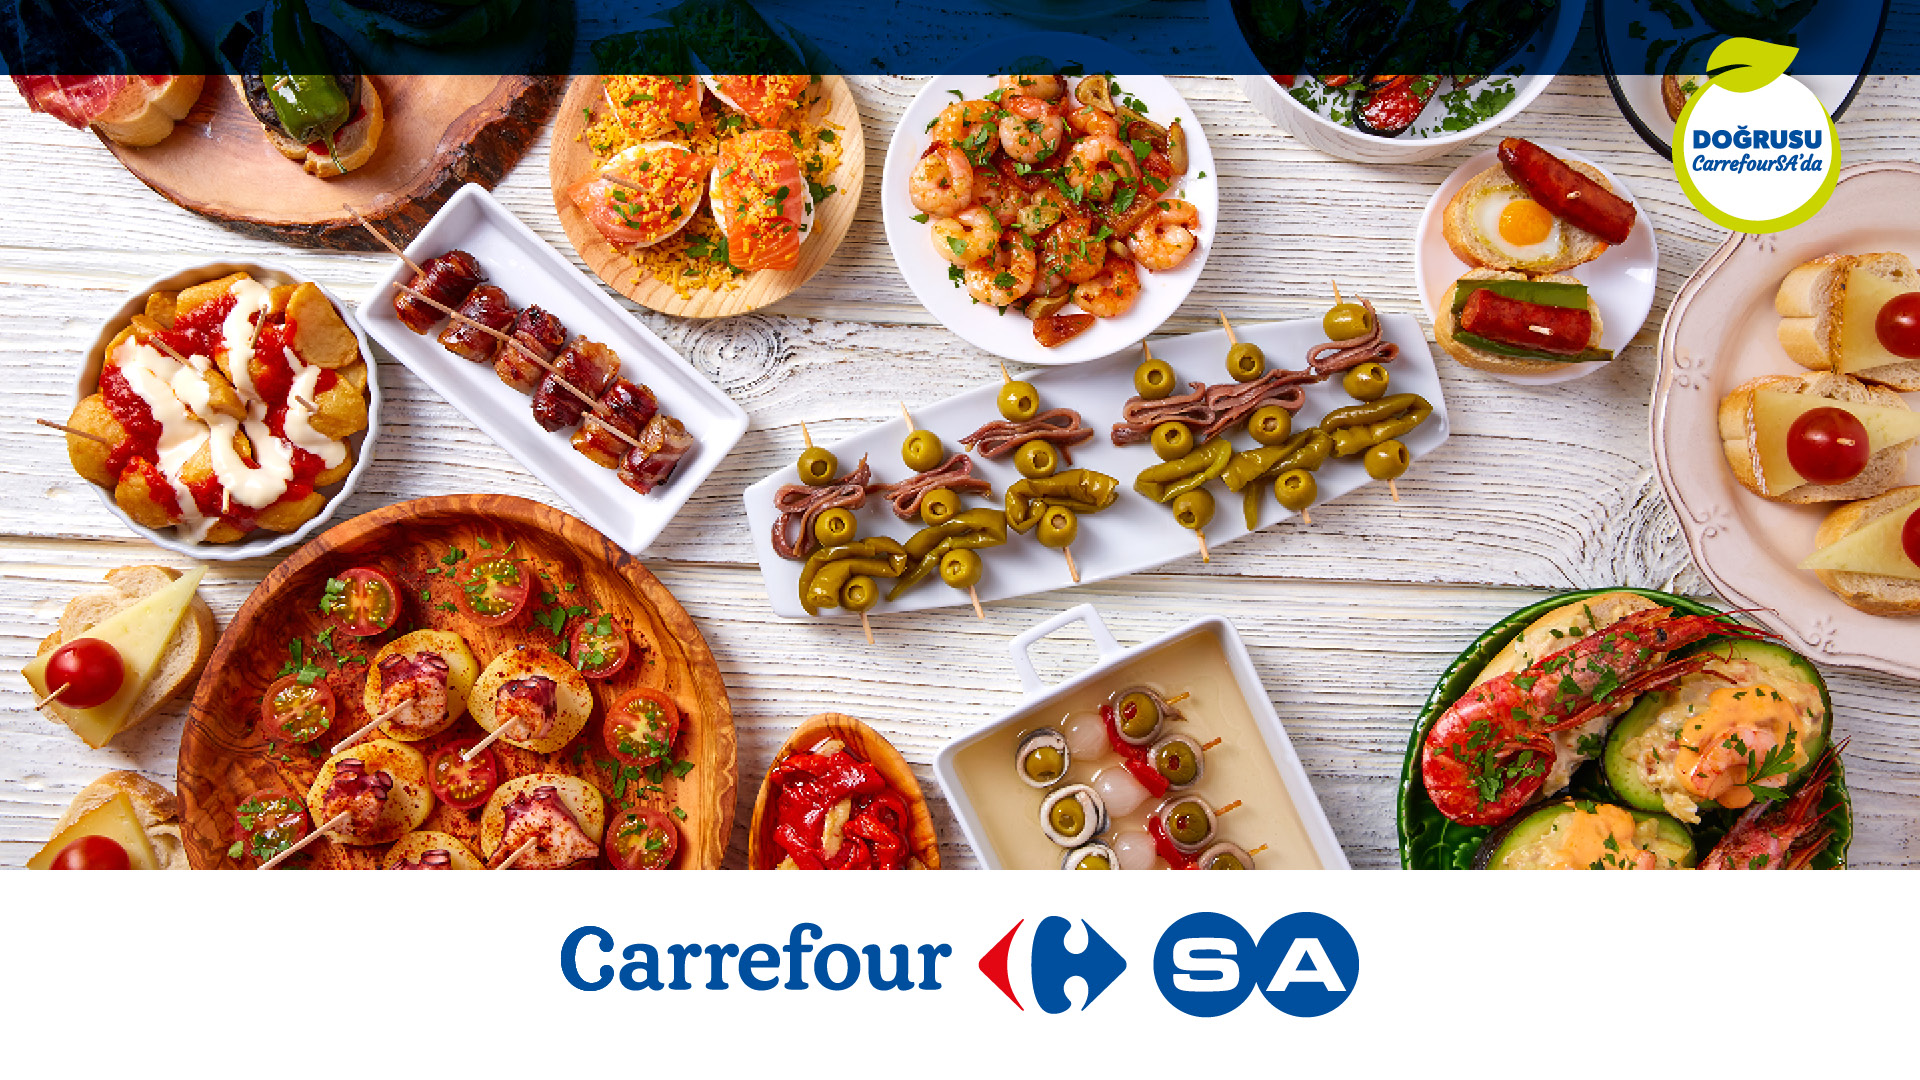 GastroClub üyeleri 1500 TL ve üzeri alışverişlerinde %10 CarrefourSA Puan kazanıyor!